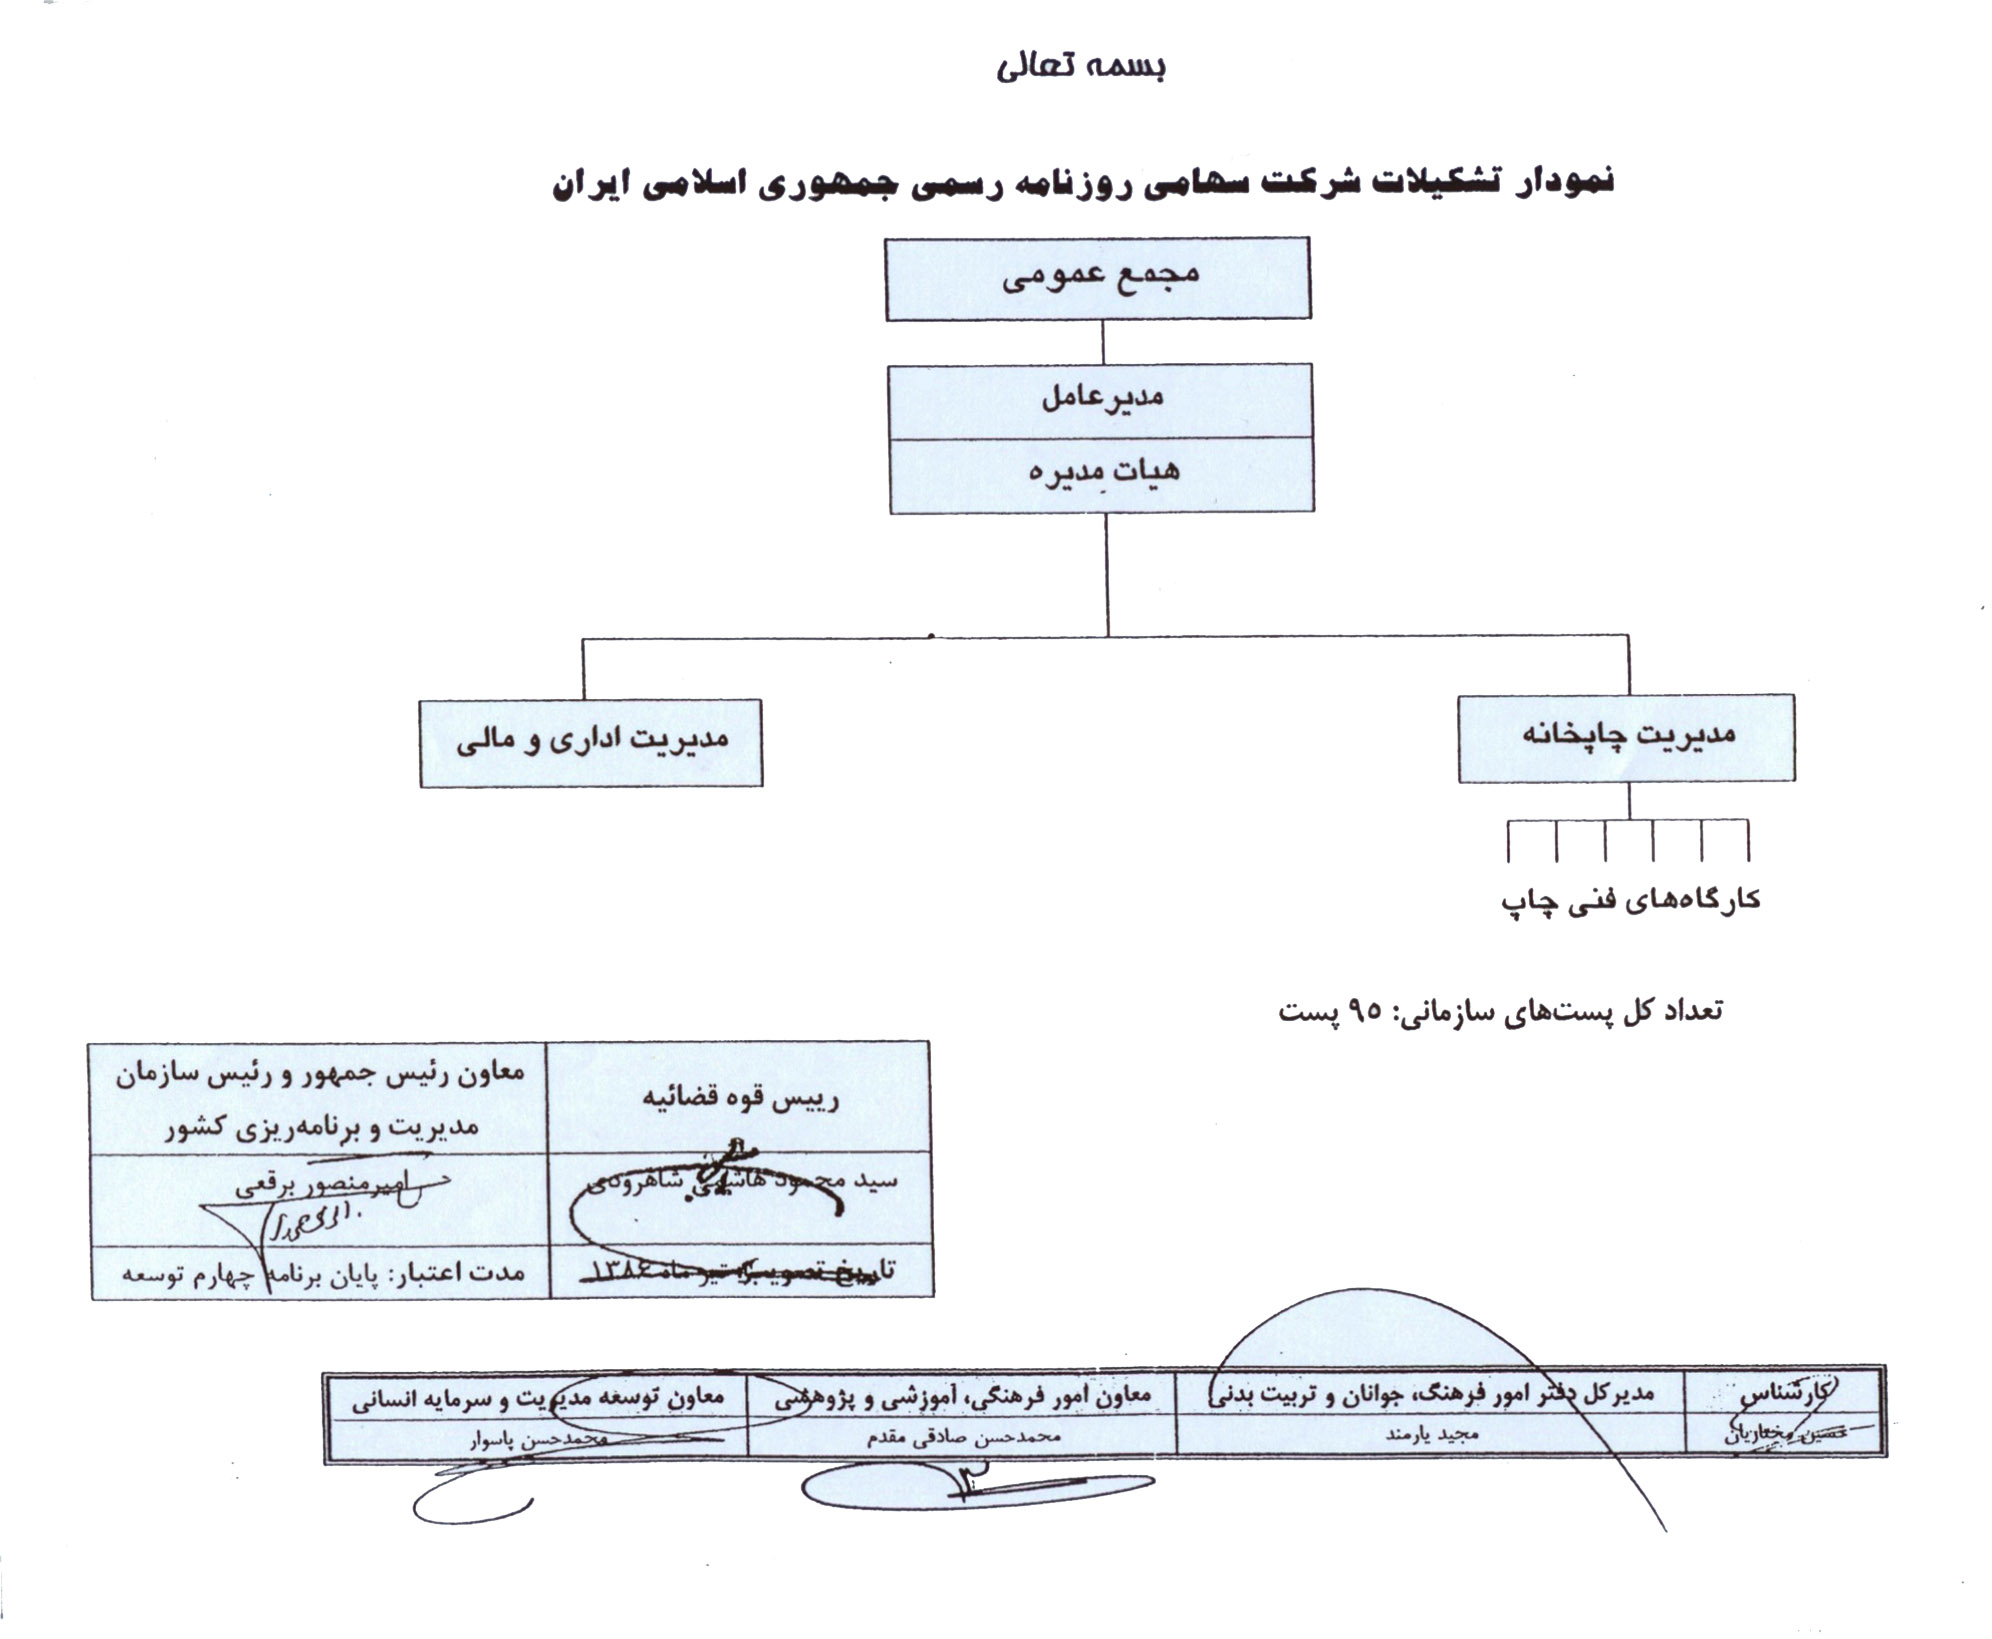 نمودار تشکیلات شرکت سهامی روزنامه رسمی جمهوری اسلامی ایران